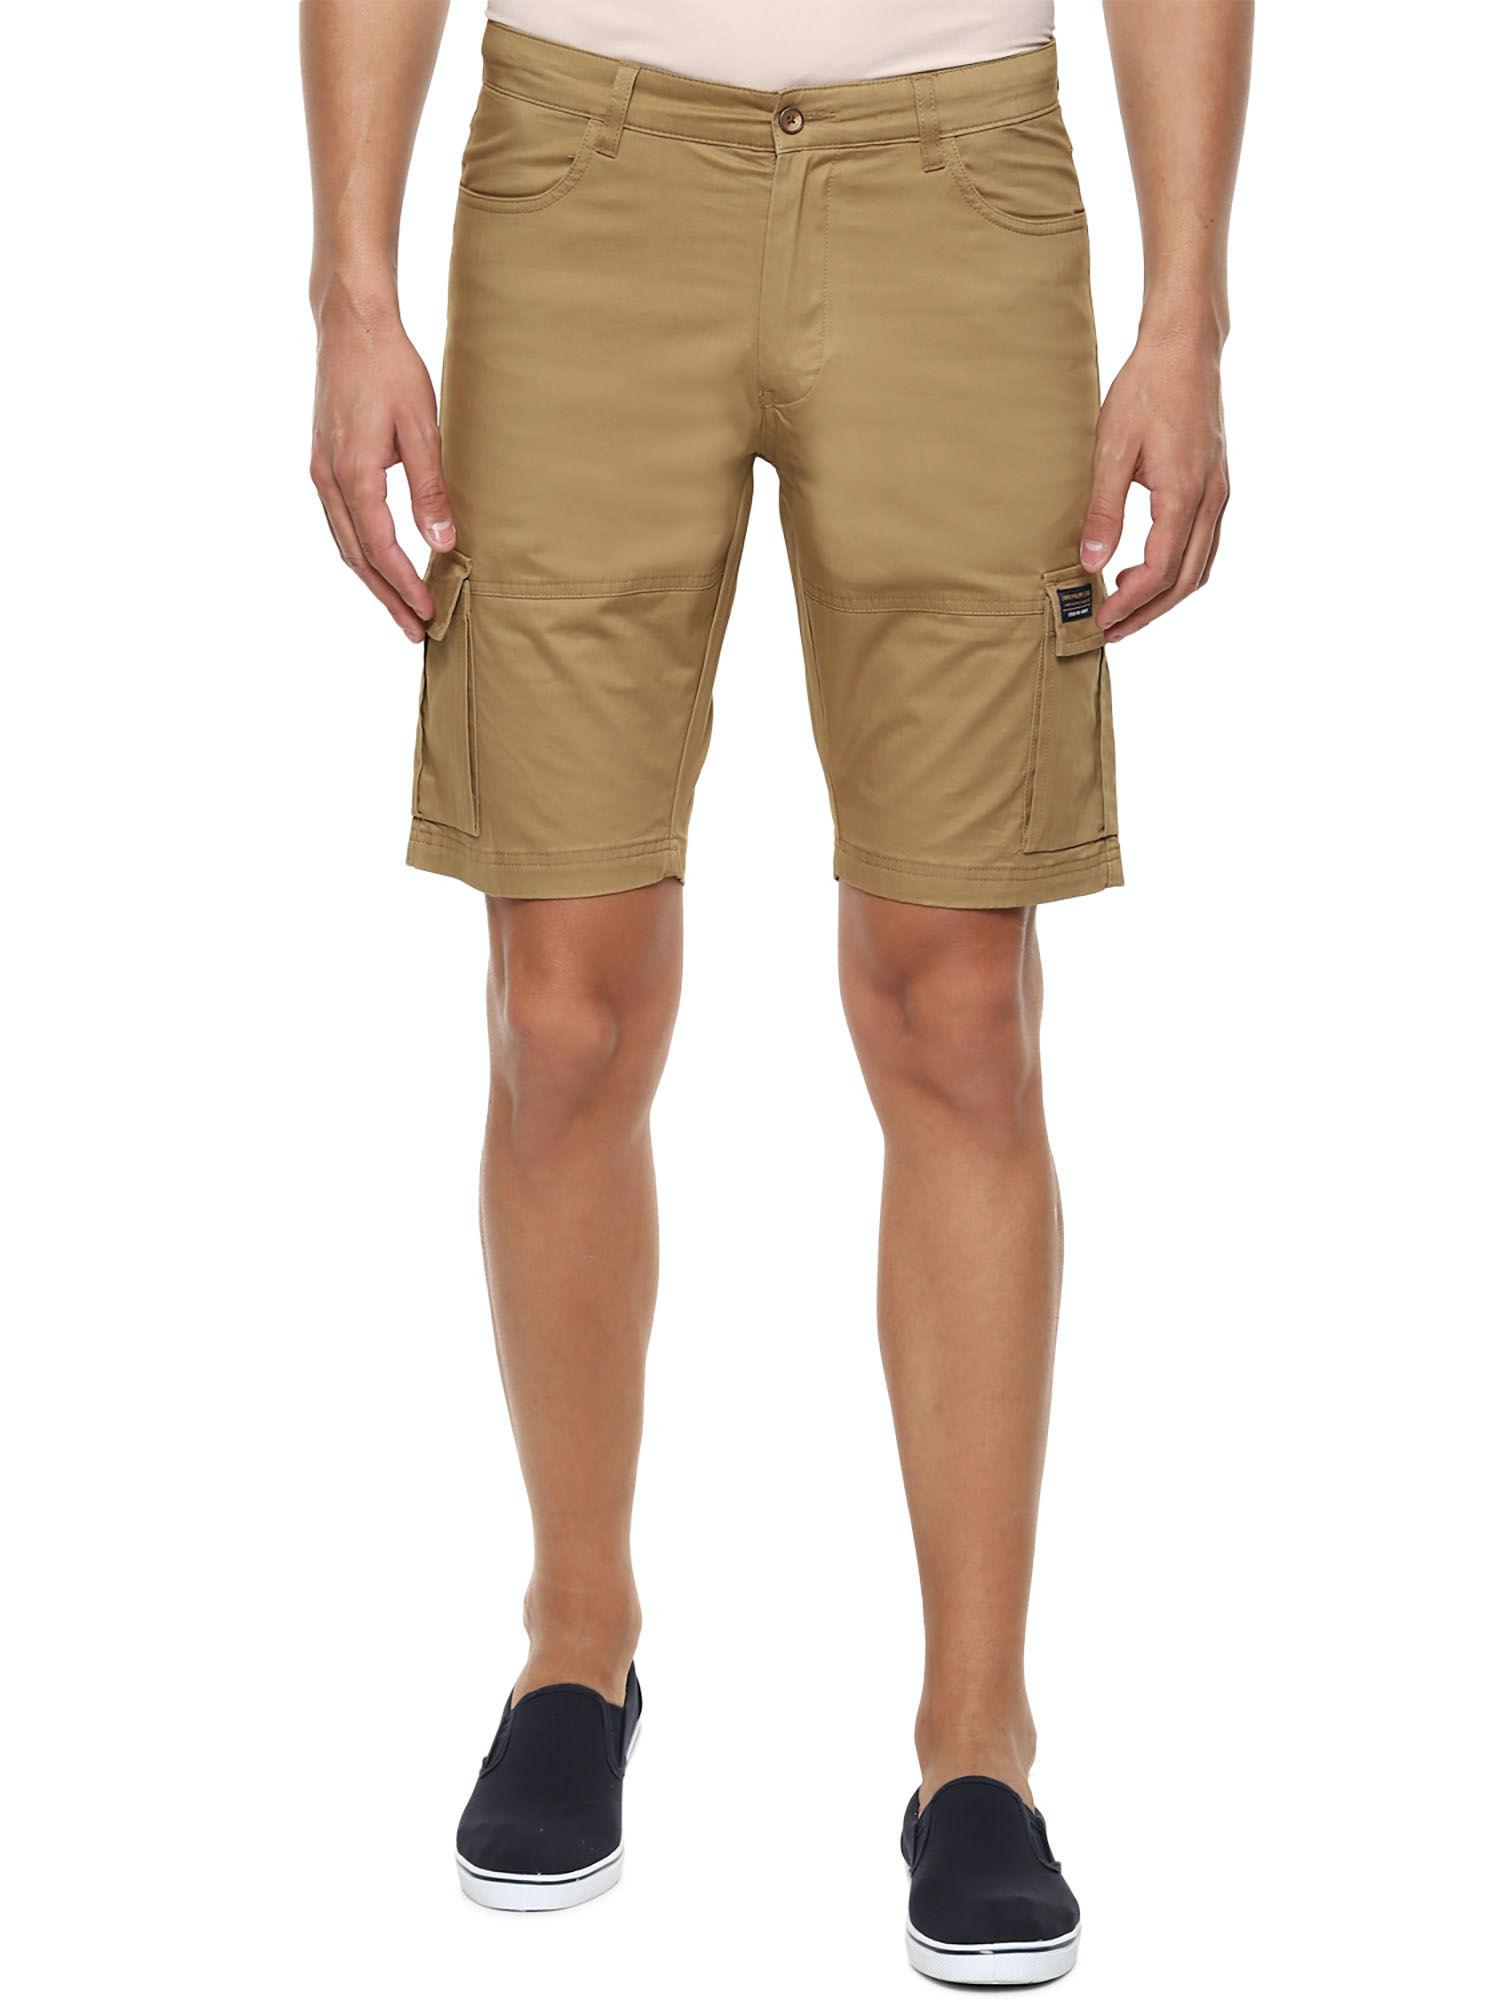 khaki shorts